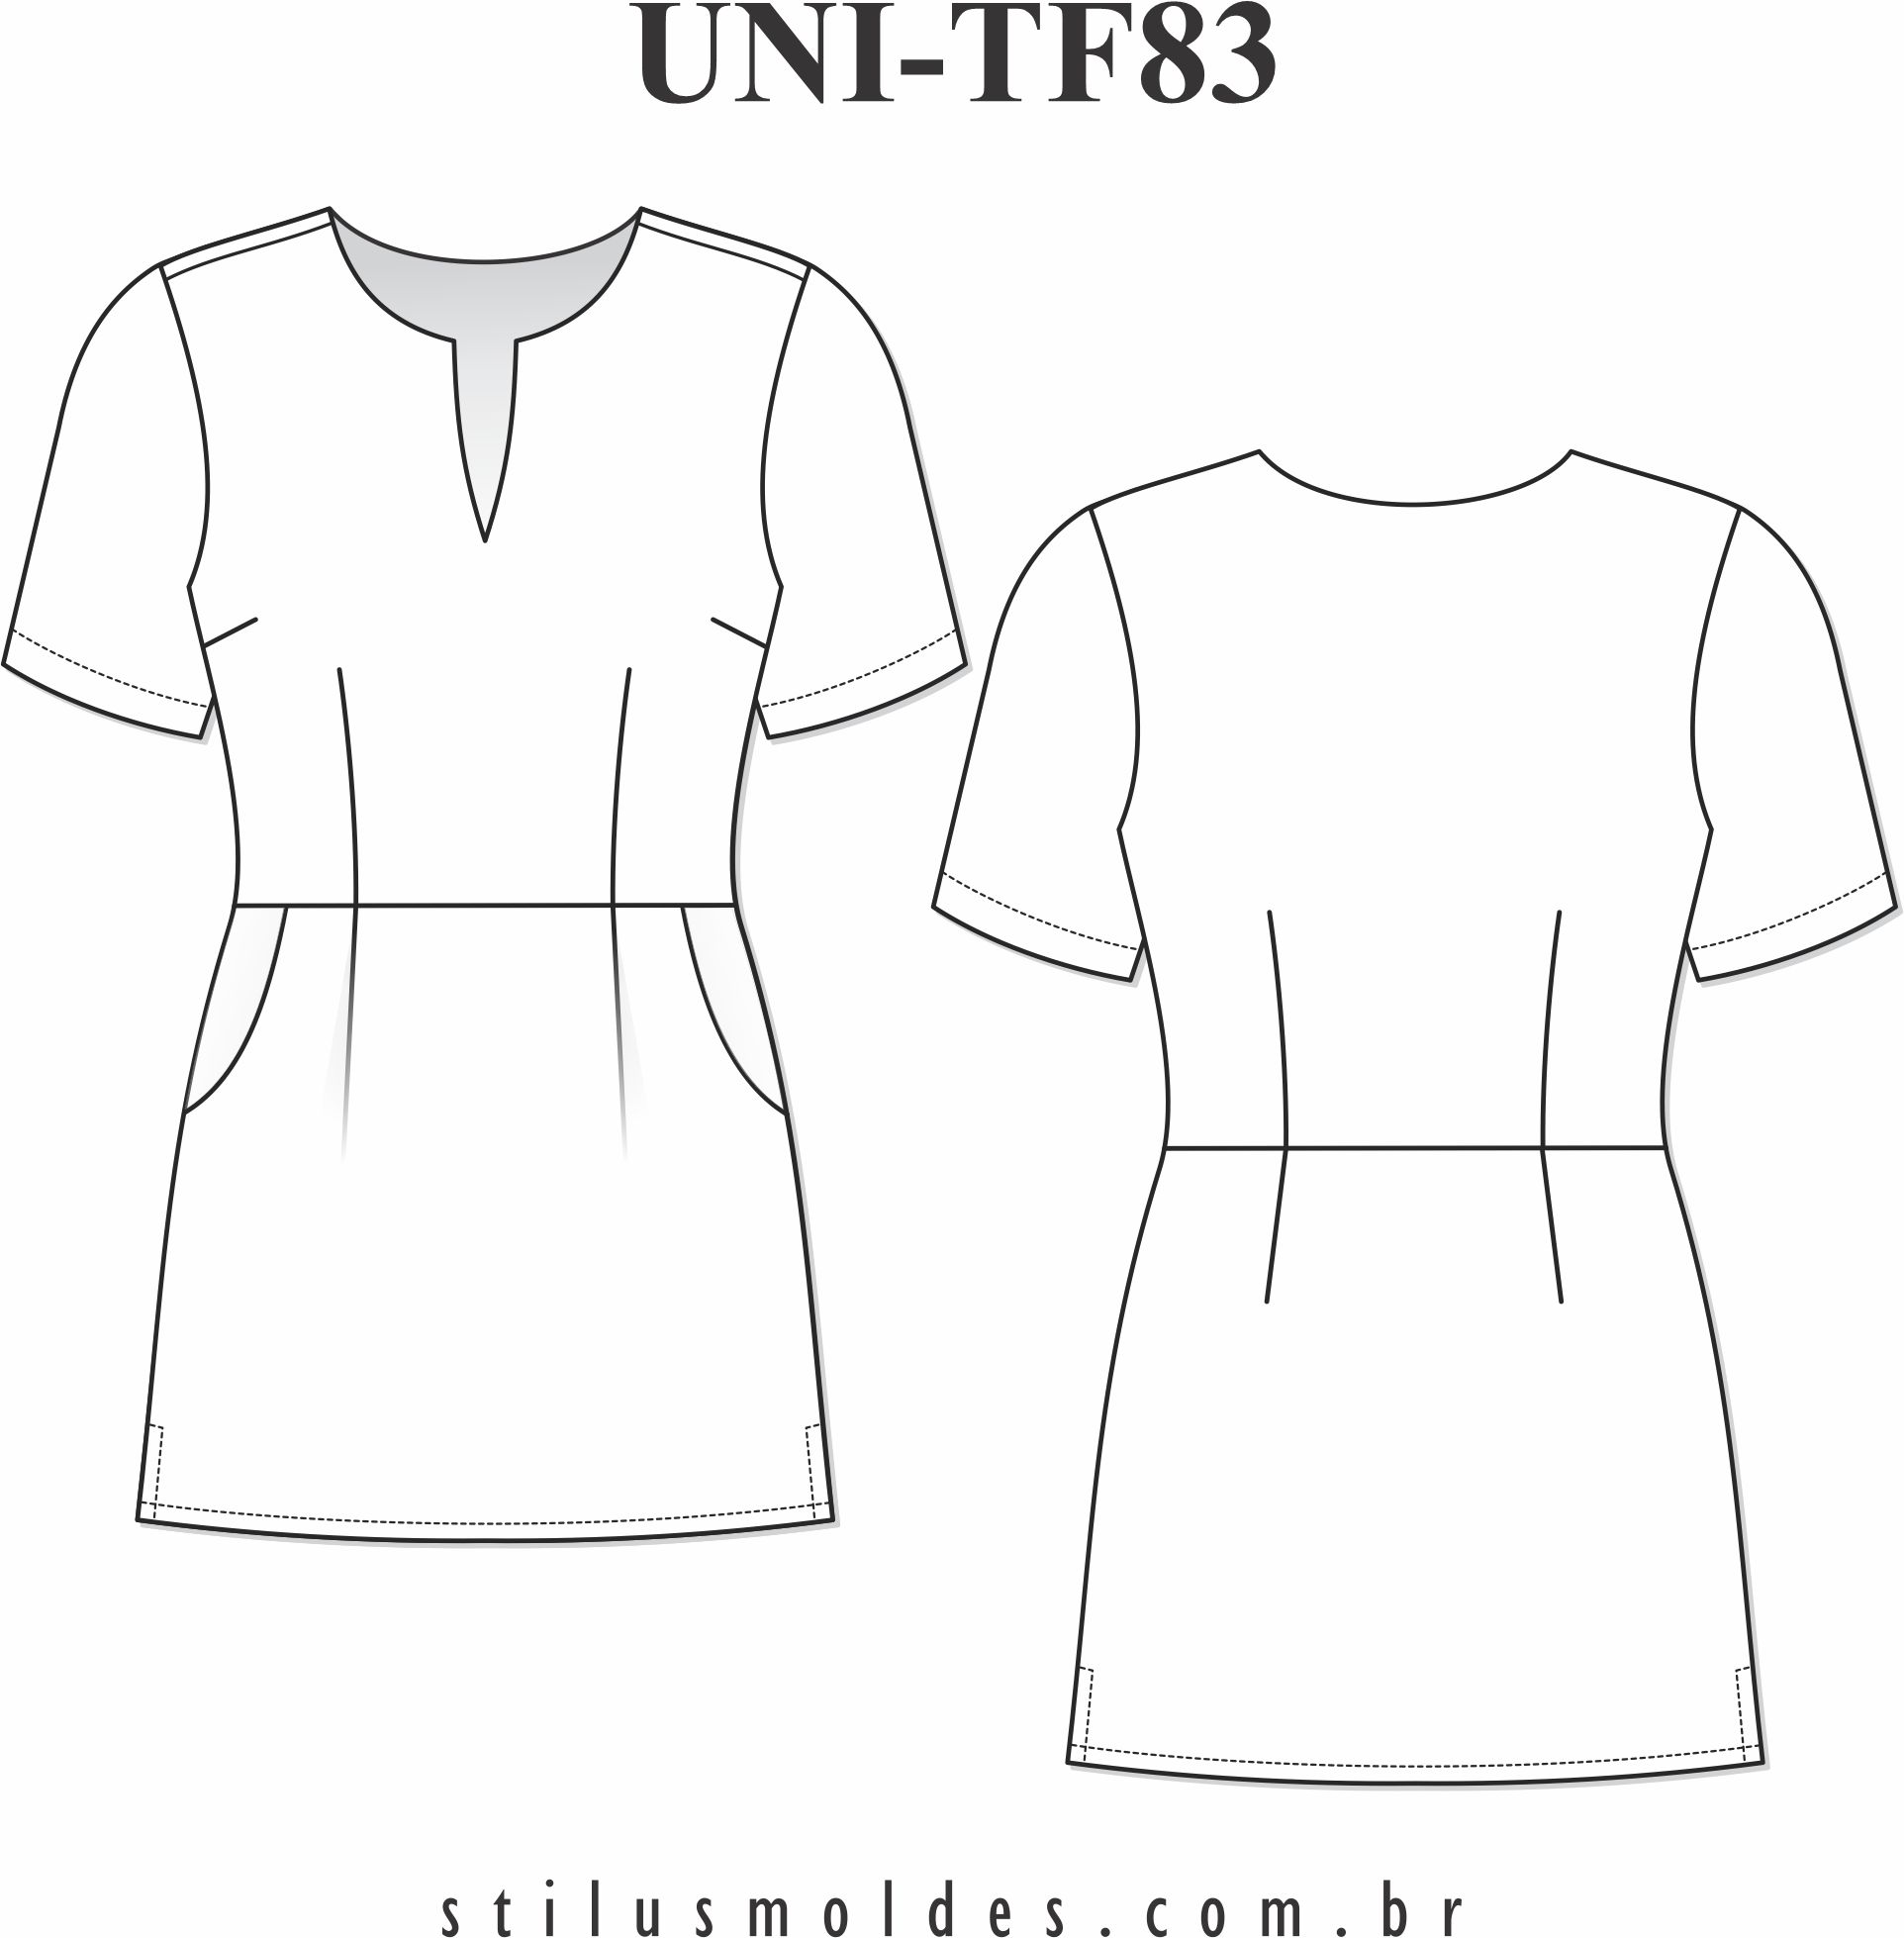 Blusa de uniforme feminino (UNI-TF83) - Foto 0